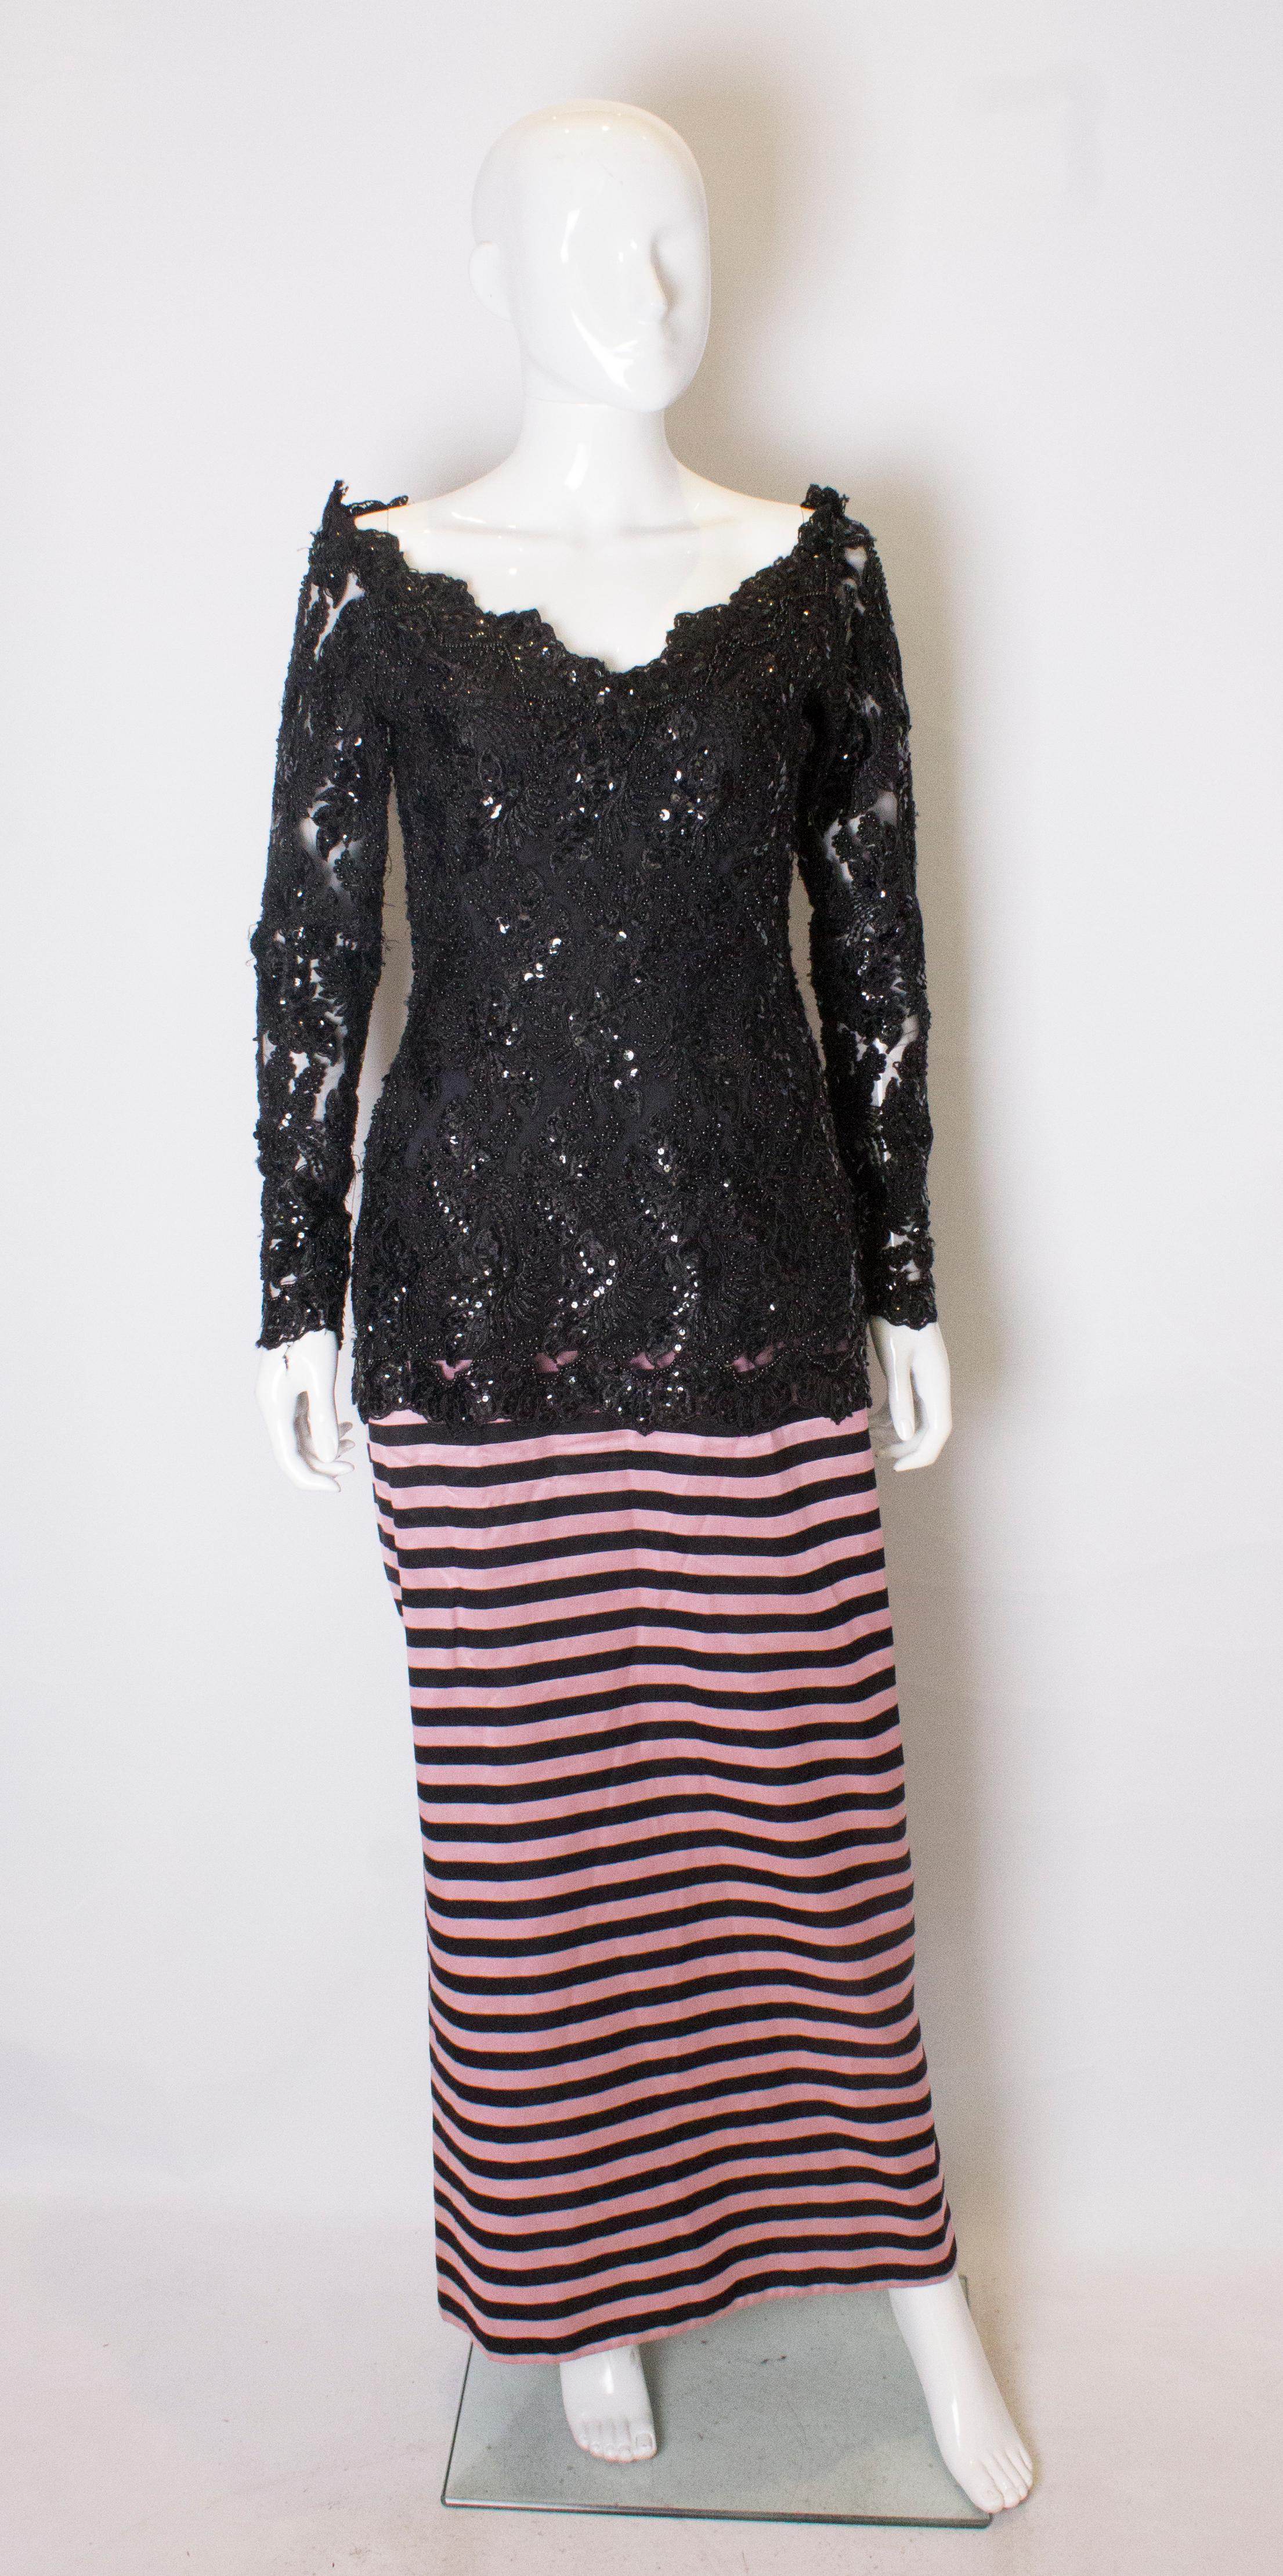 Ein umwerfendes Kleid von Delores Couture. Das Oberteil ist stark mit Perlen besetzt, hat einen V-Ausschnitt und einen Gummizug unter den Schultern, so dass das Kleid schulterfrei getragen werden kann. Der Rock ist in einem rosa und schwarzen